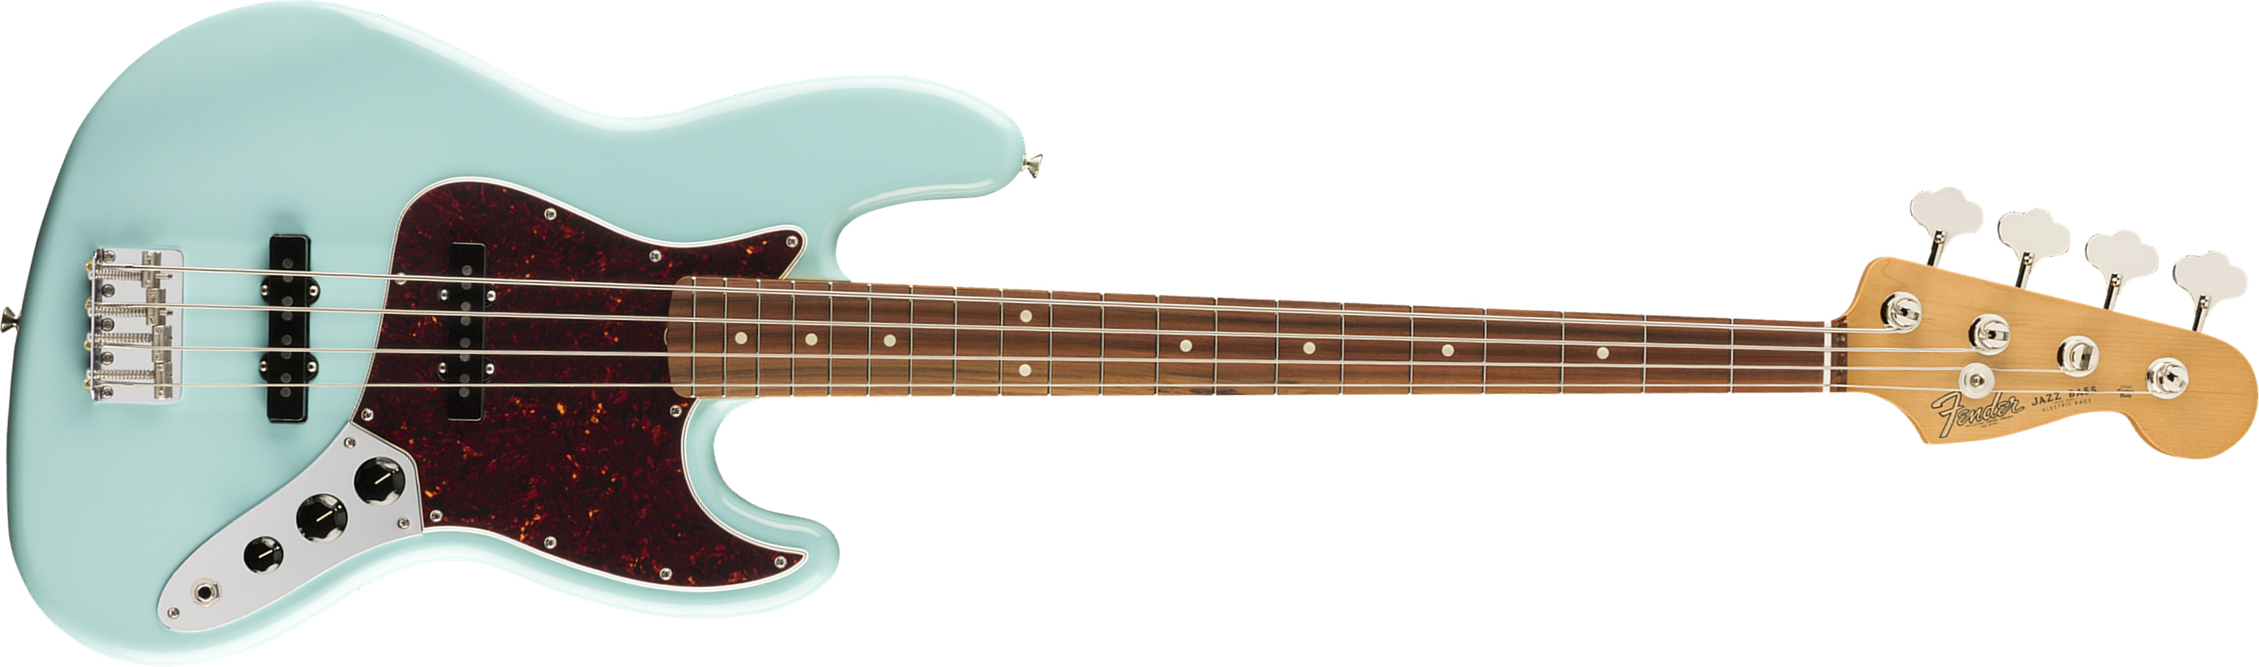 Fender Jazz Bass 60s Vintera Vintage Mex Pf - Daphne Blue - Bajo eléctrico de cuerpo sólido - Main picture